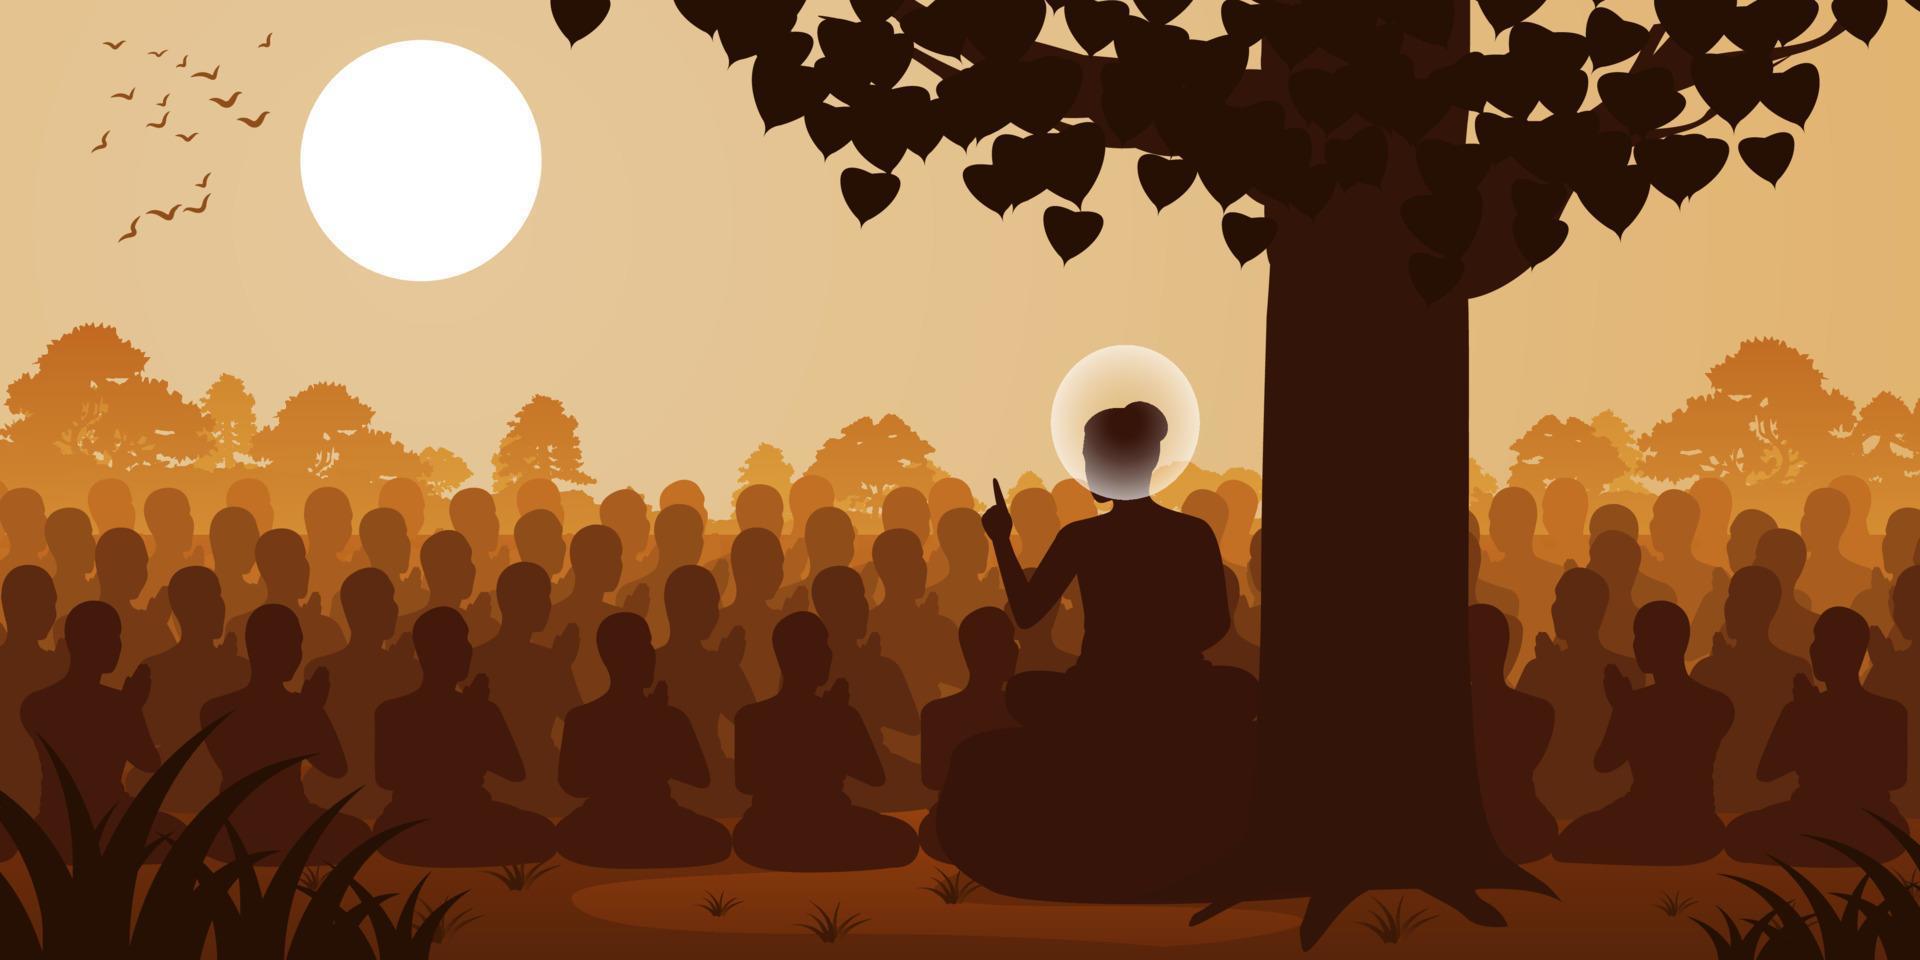 Buddhas herre predikan dharma till skaran av munkar, siluettstil vektor